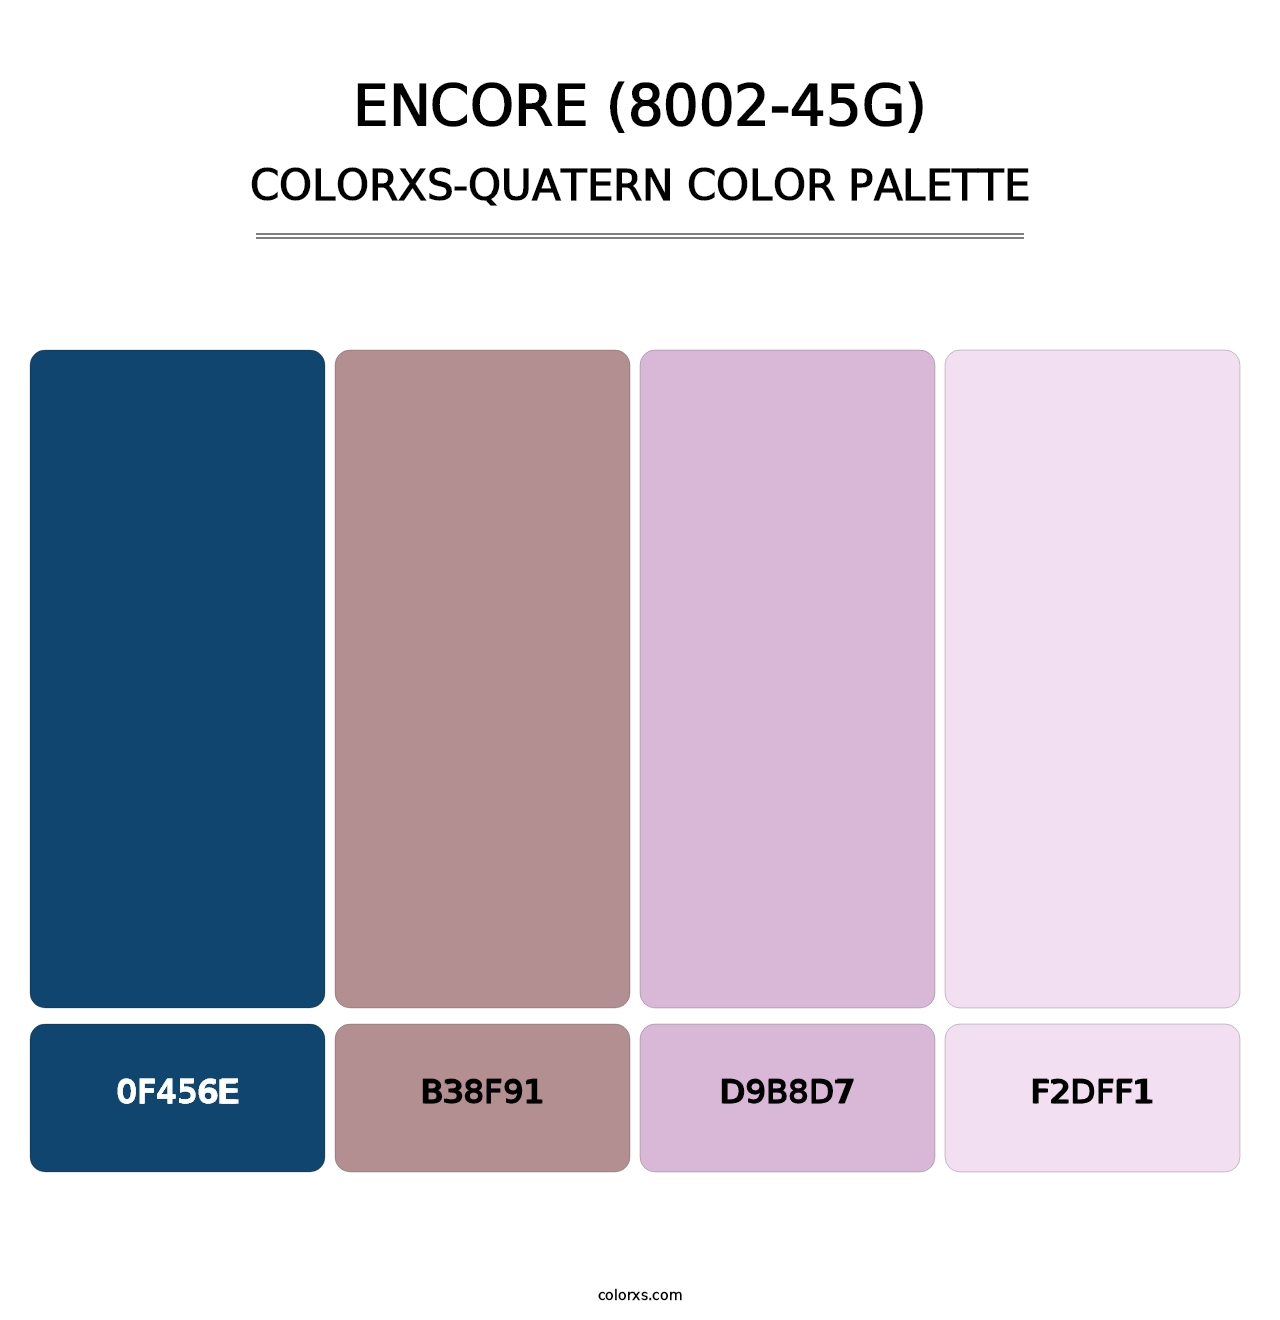 Encore (8002-45G) - Colorxs Quatern Palette